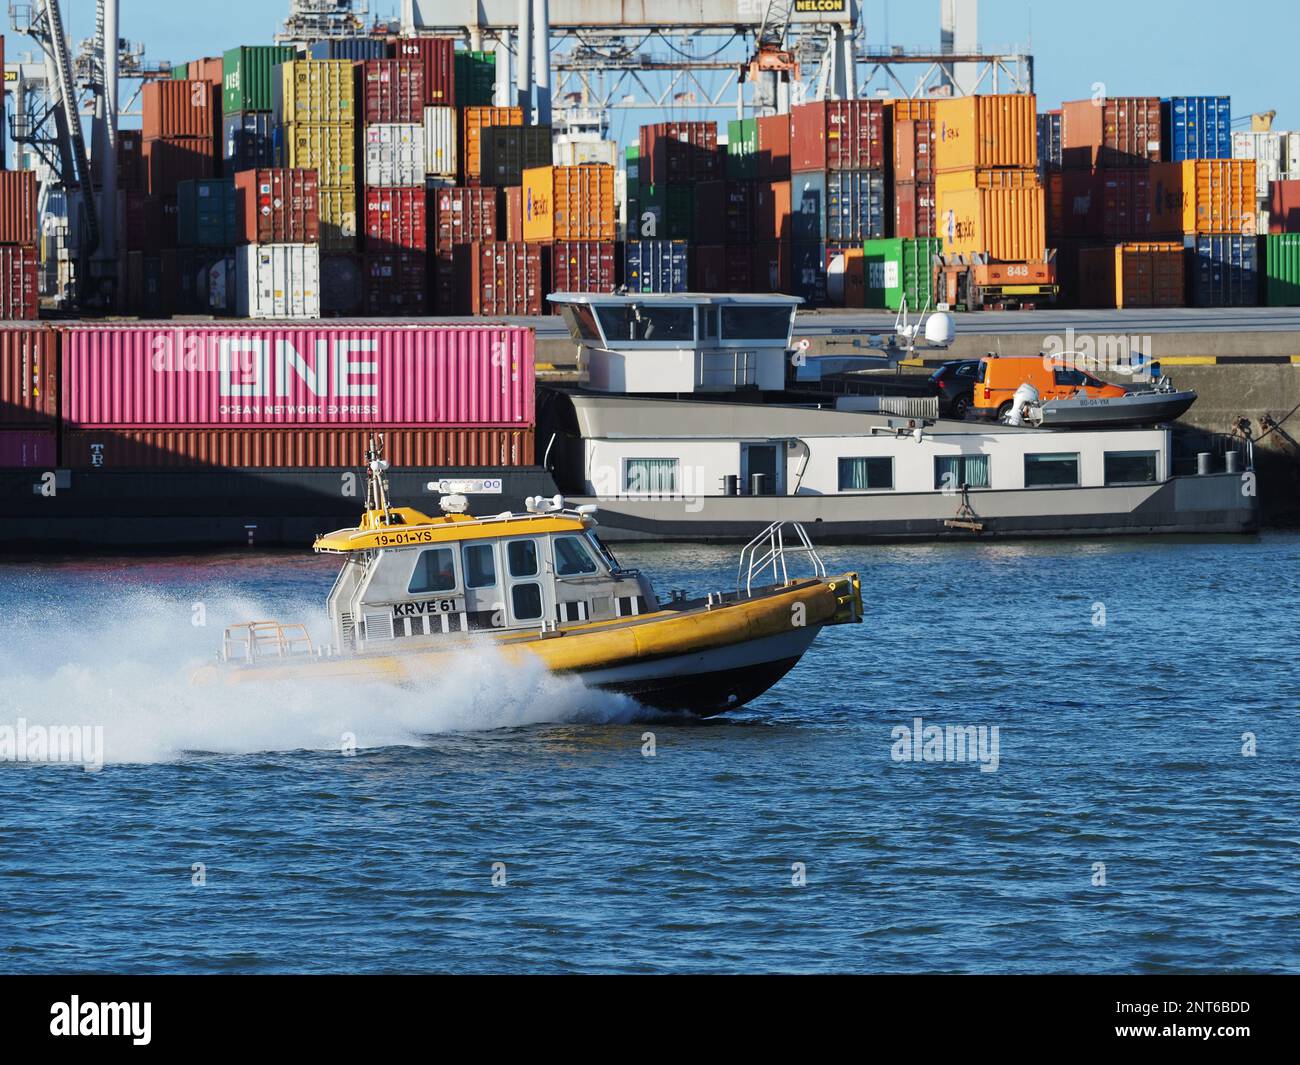 KRVE61 è un peschereccio pilota ad alta velocità, visto qui nel porto di Rotterdam, nei Paesi Bassi. Foto Stock